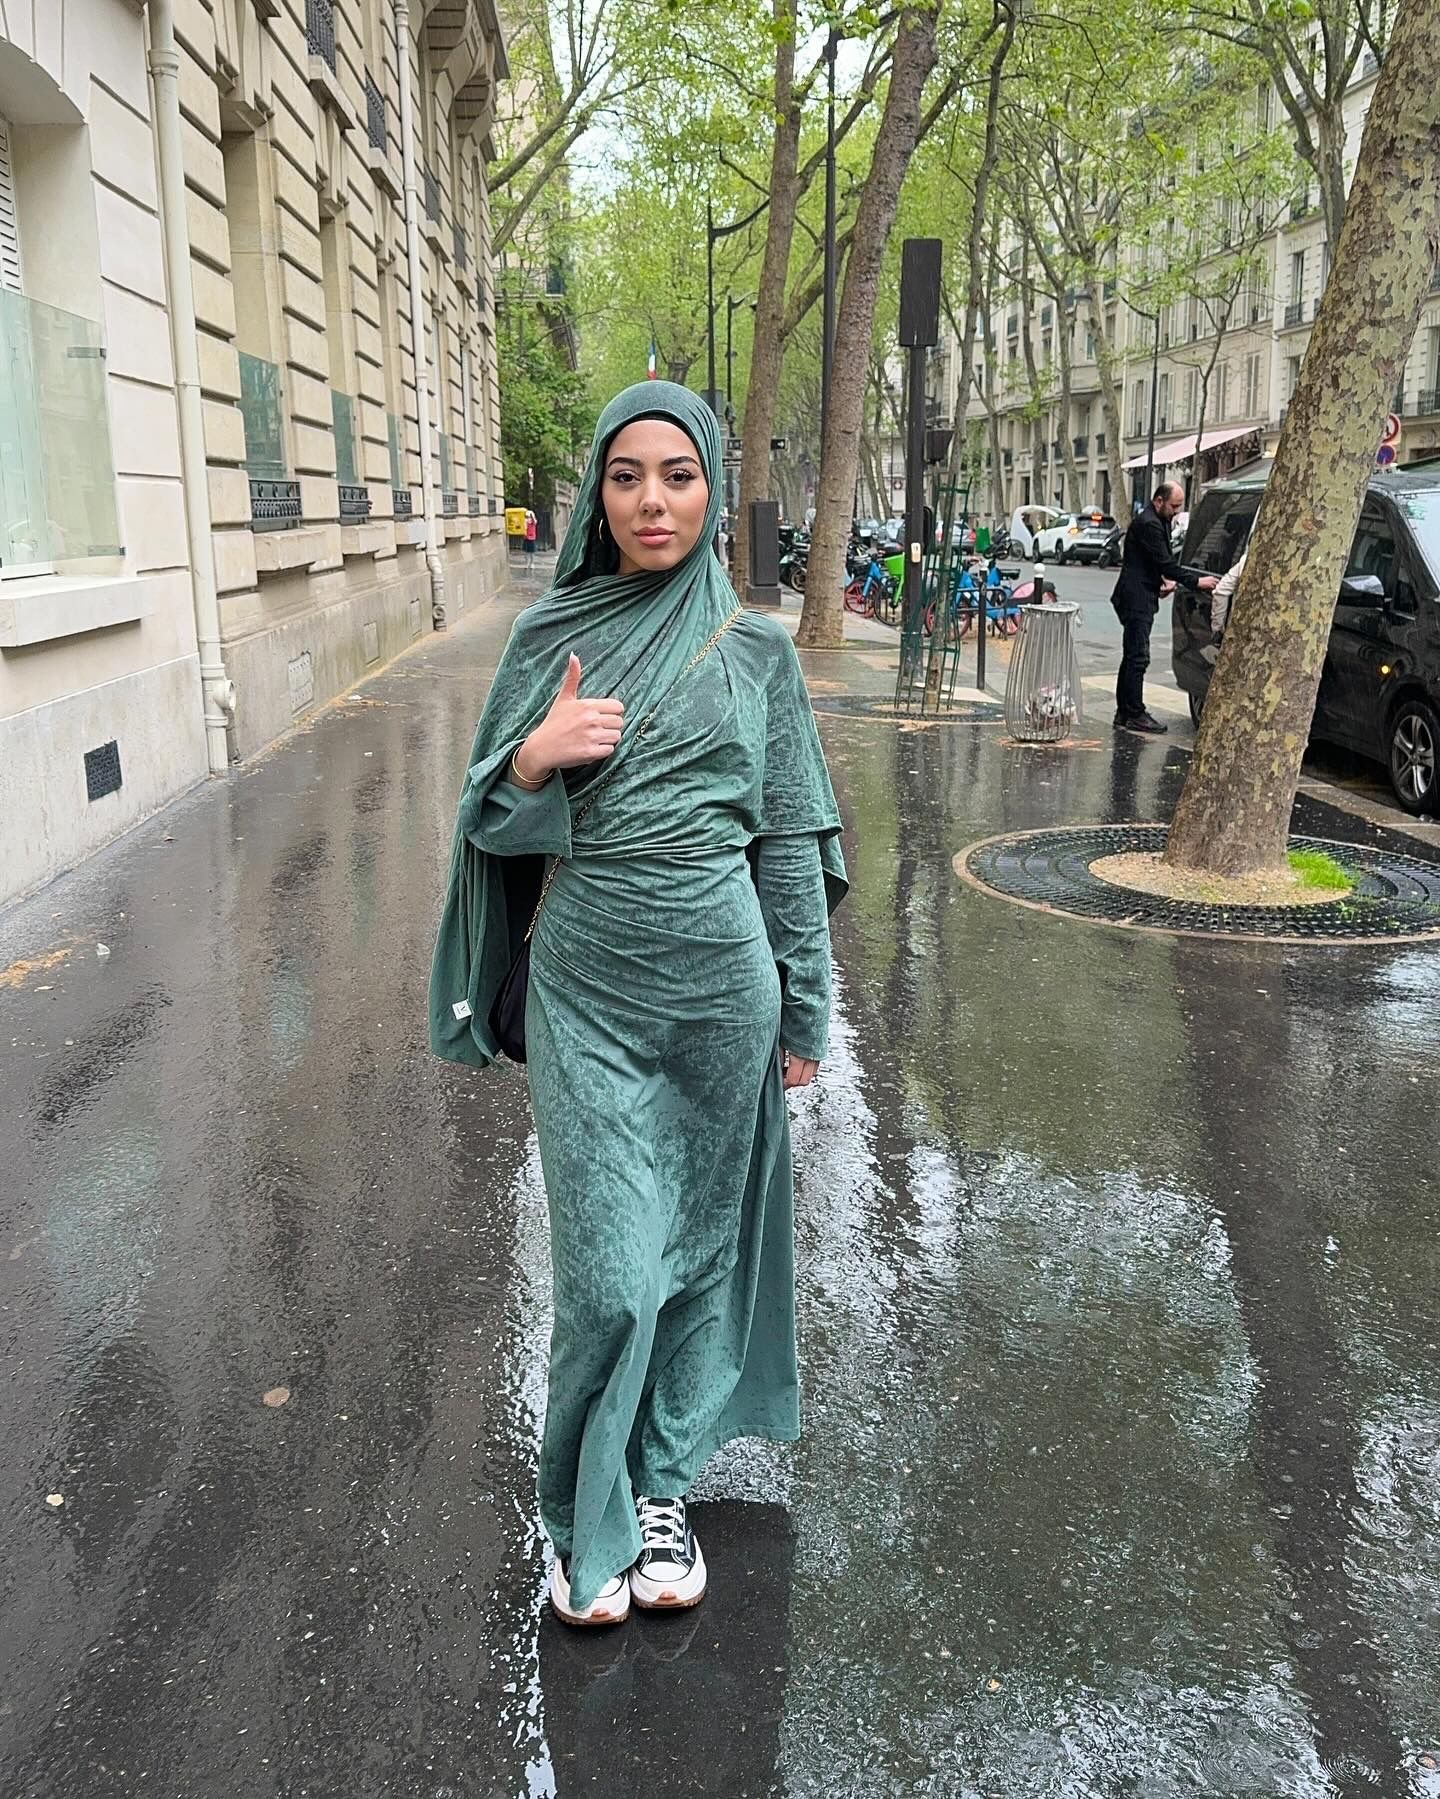 Paris, mercredi 17 avril. Fatima Saidi, une touriste marocaine, a été visée par deux crachats alors qu'elle et son amie se promenaient aux abords de la Tour Eiffel. Instagram Fátima de Tetuán